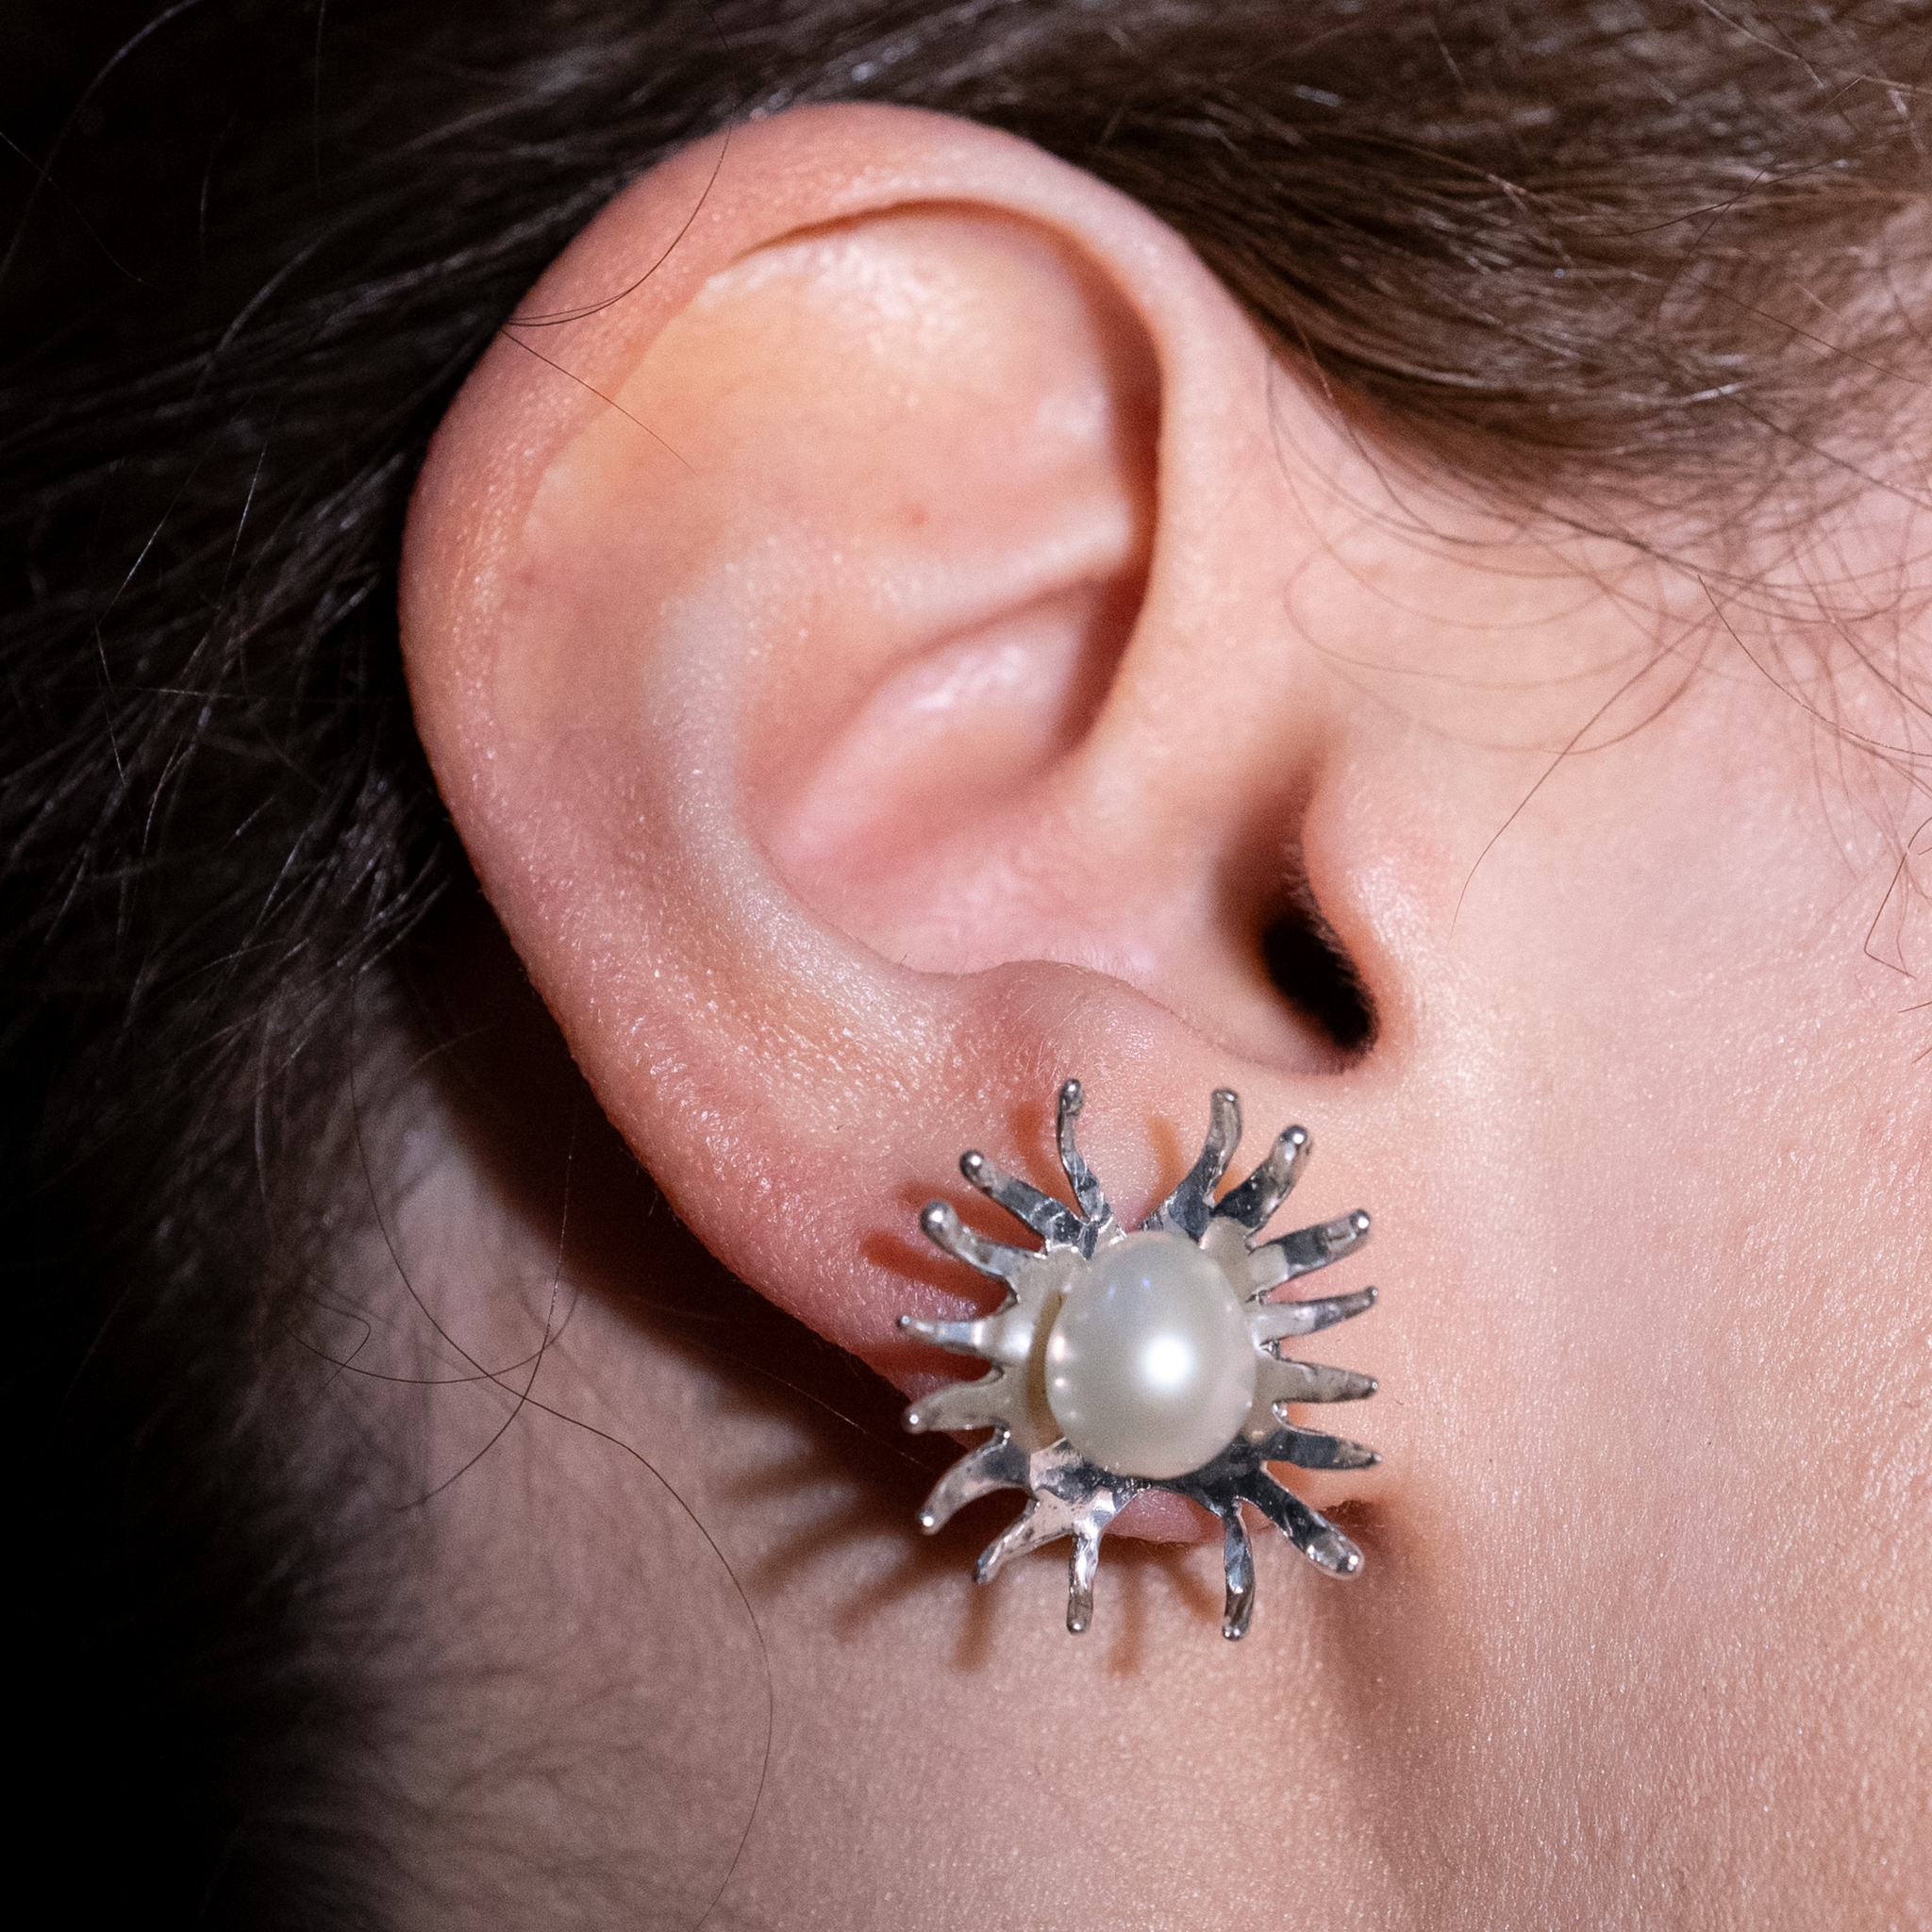 Spore Flower Earrings - Studs